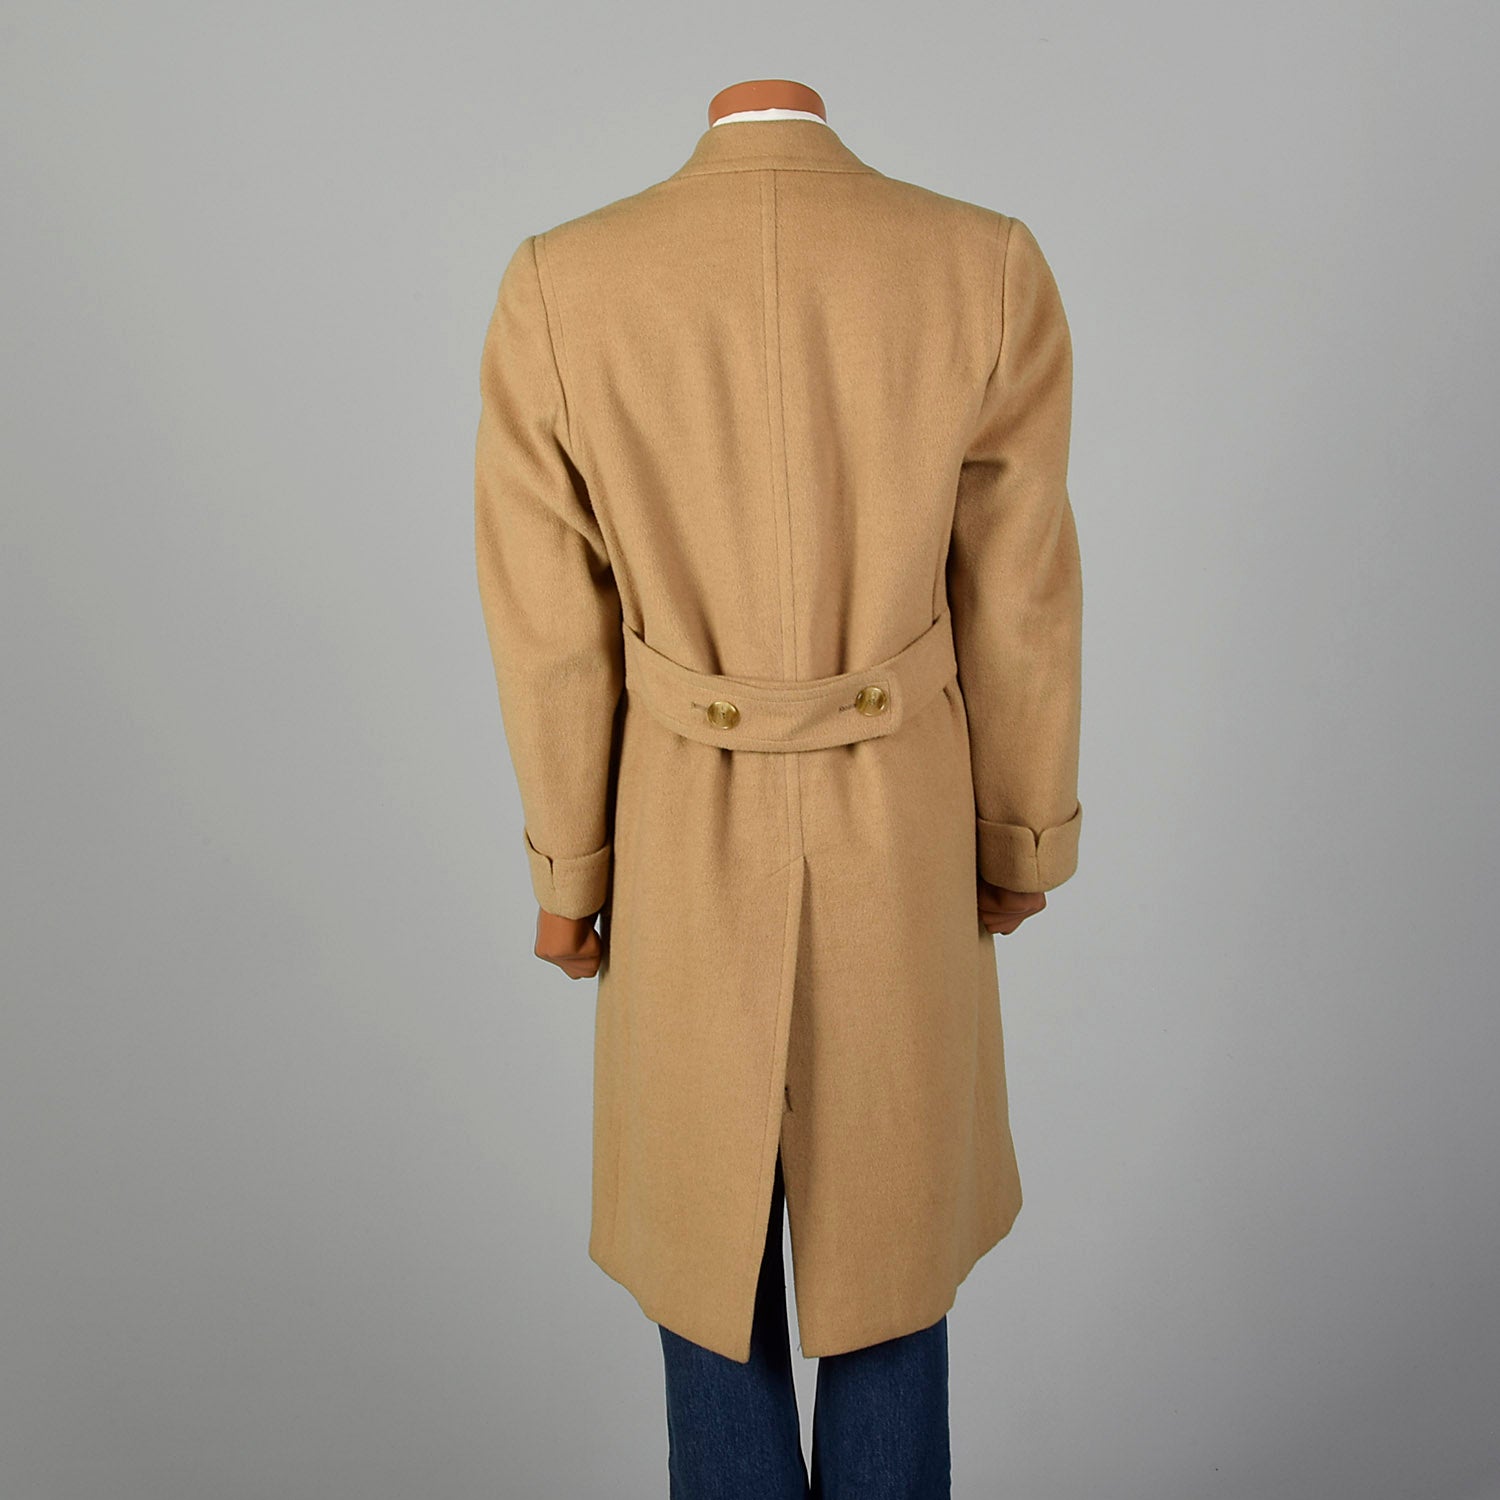 Medium 1970s Men's Tan Camel Hair Coat